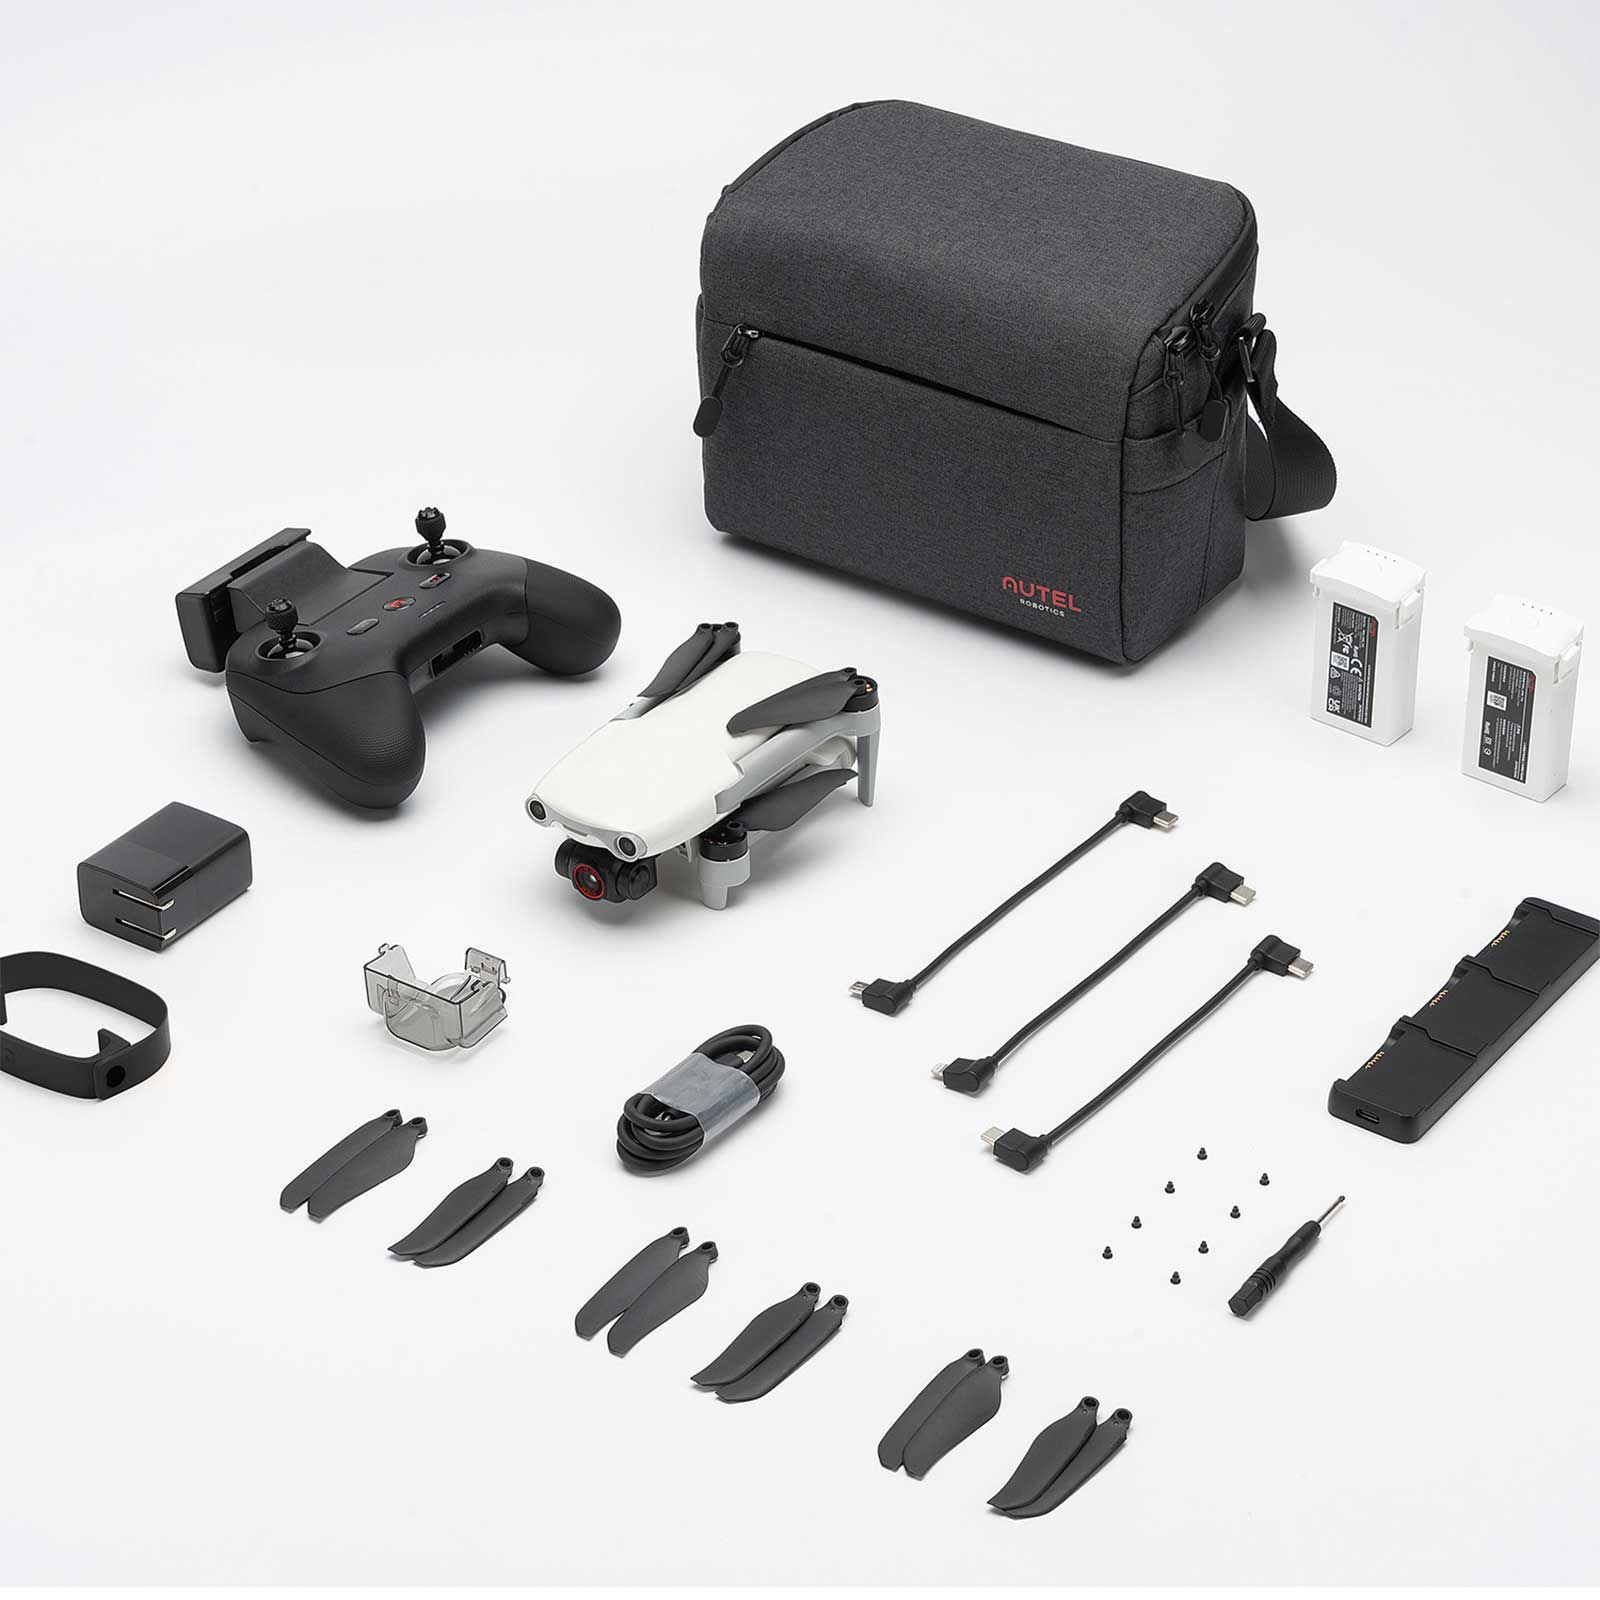 Autel Robotics Evo Nano + drone 249g avec Premium bundle 1 / 1.28 pouces capteur CMOS 4K caméra drone Mini drone